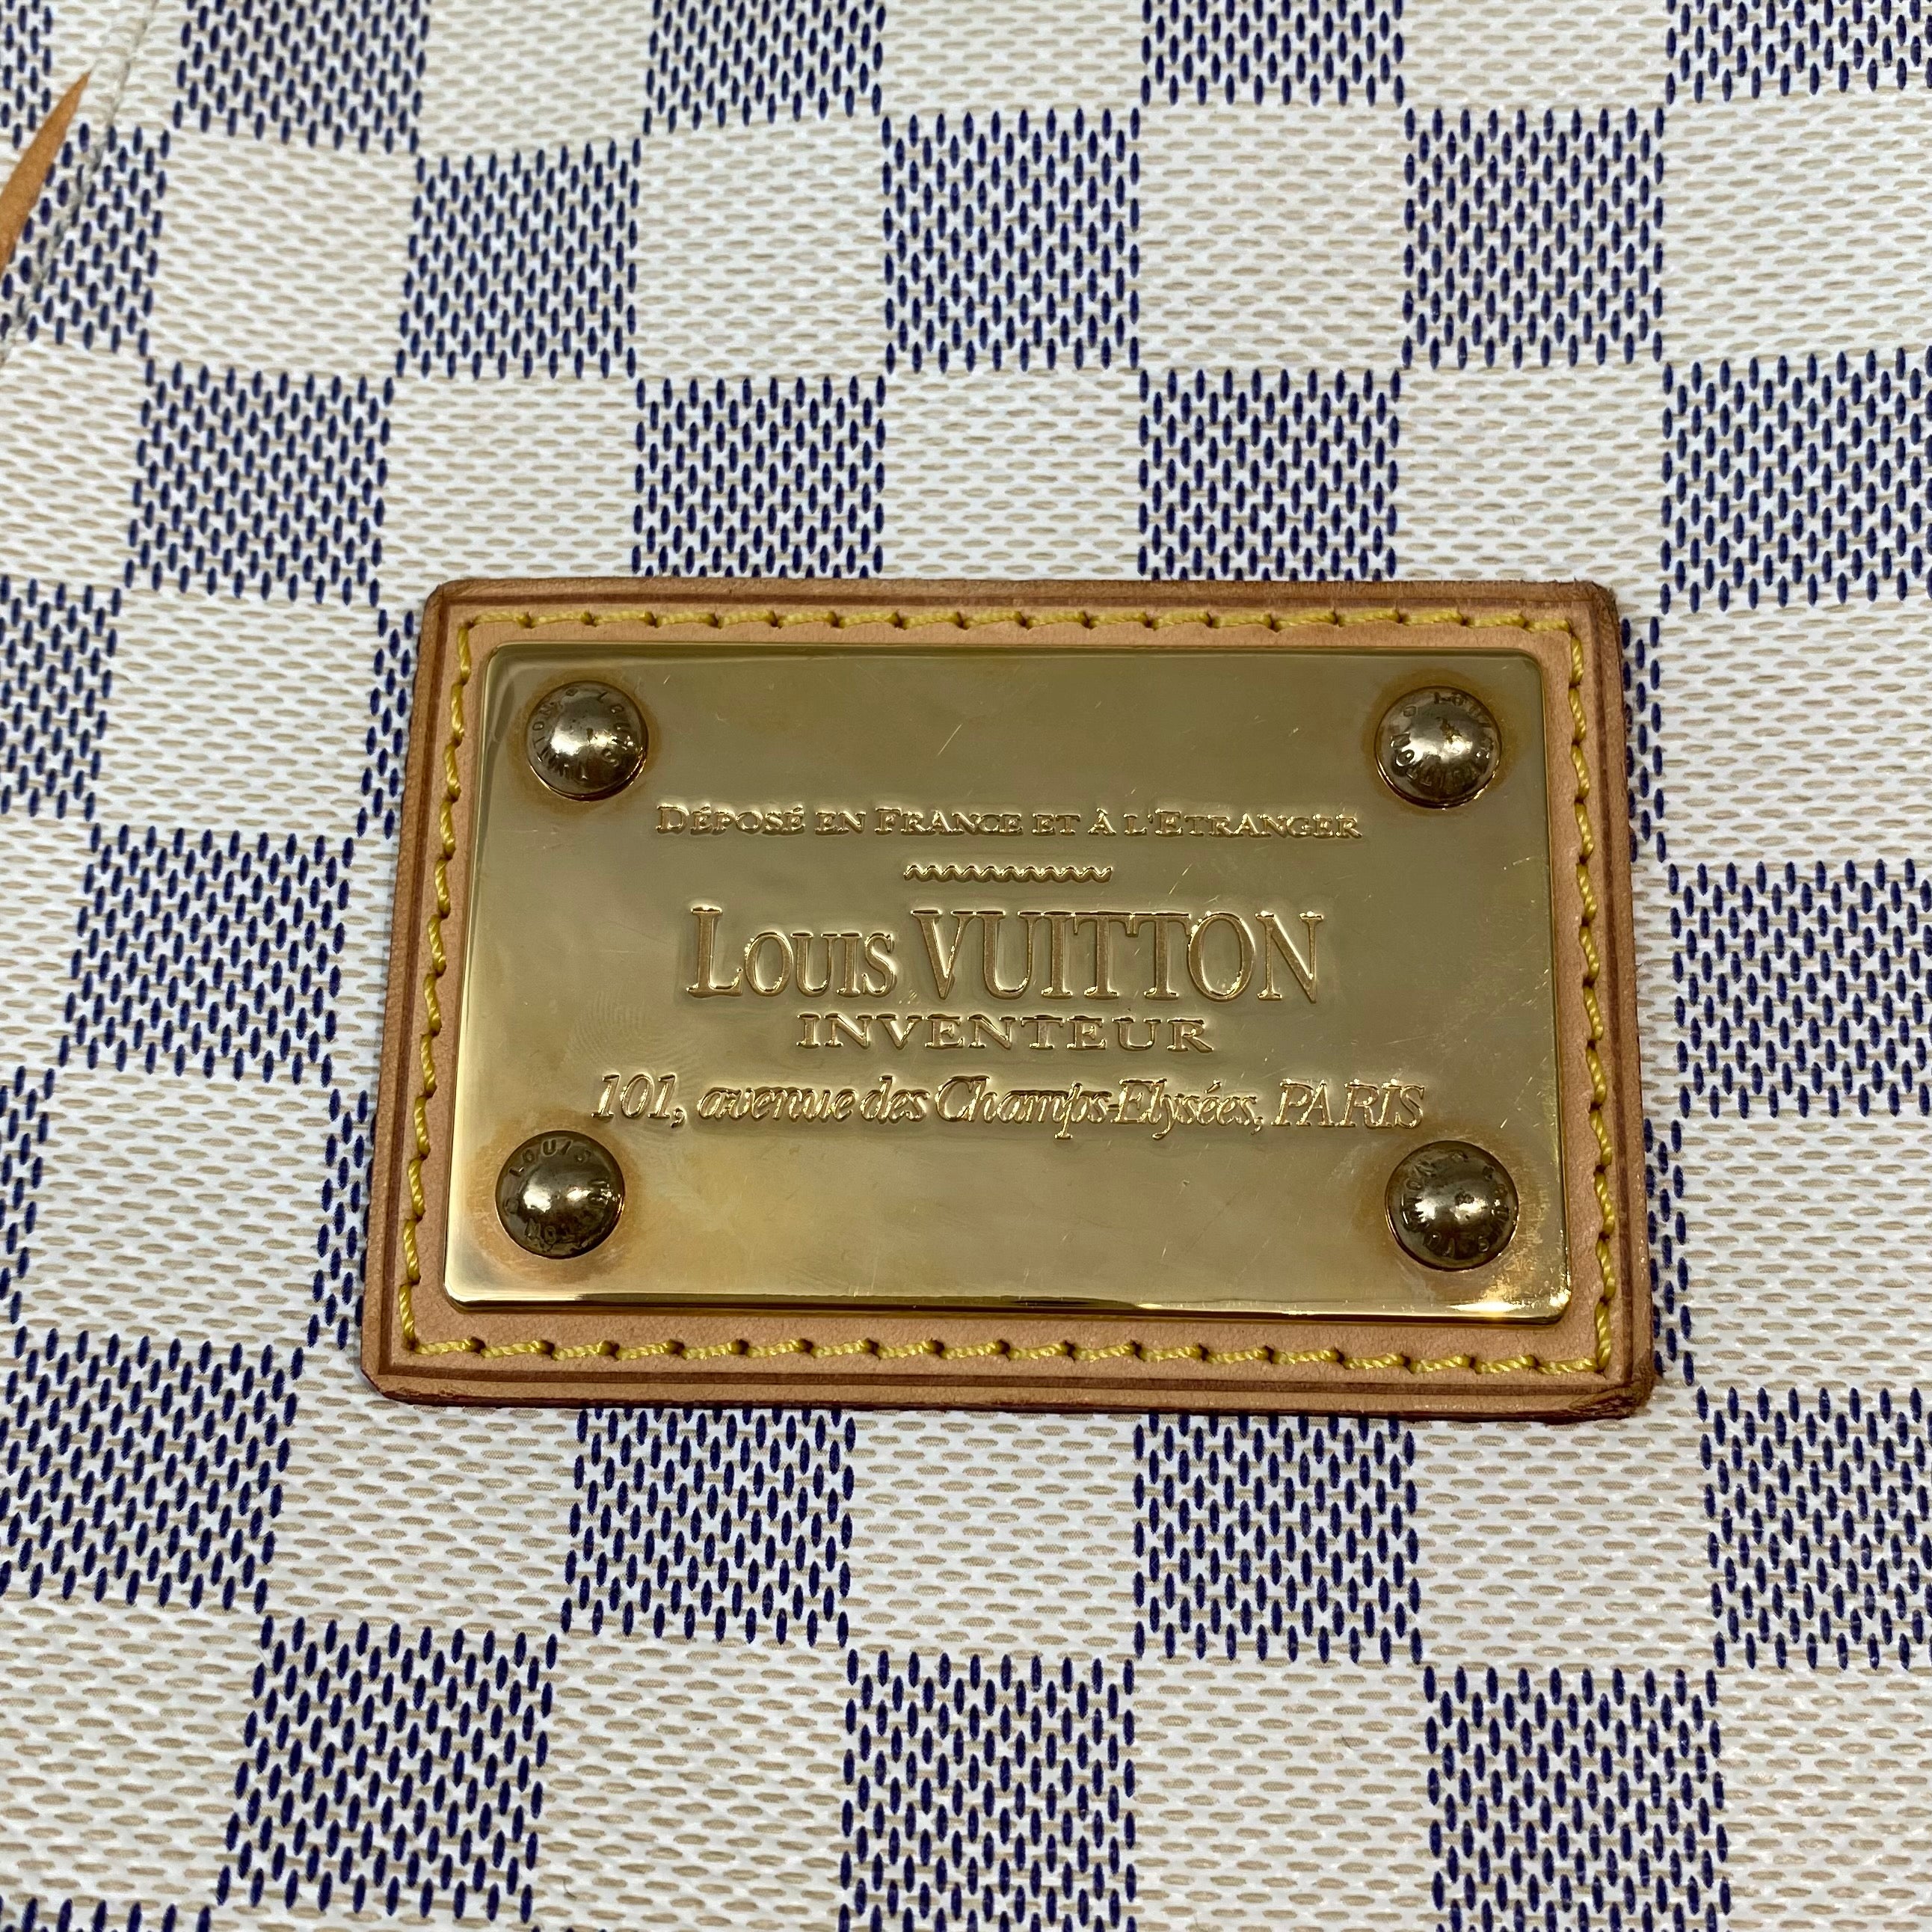 Tas Louis Vuitton Inventeur